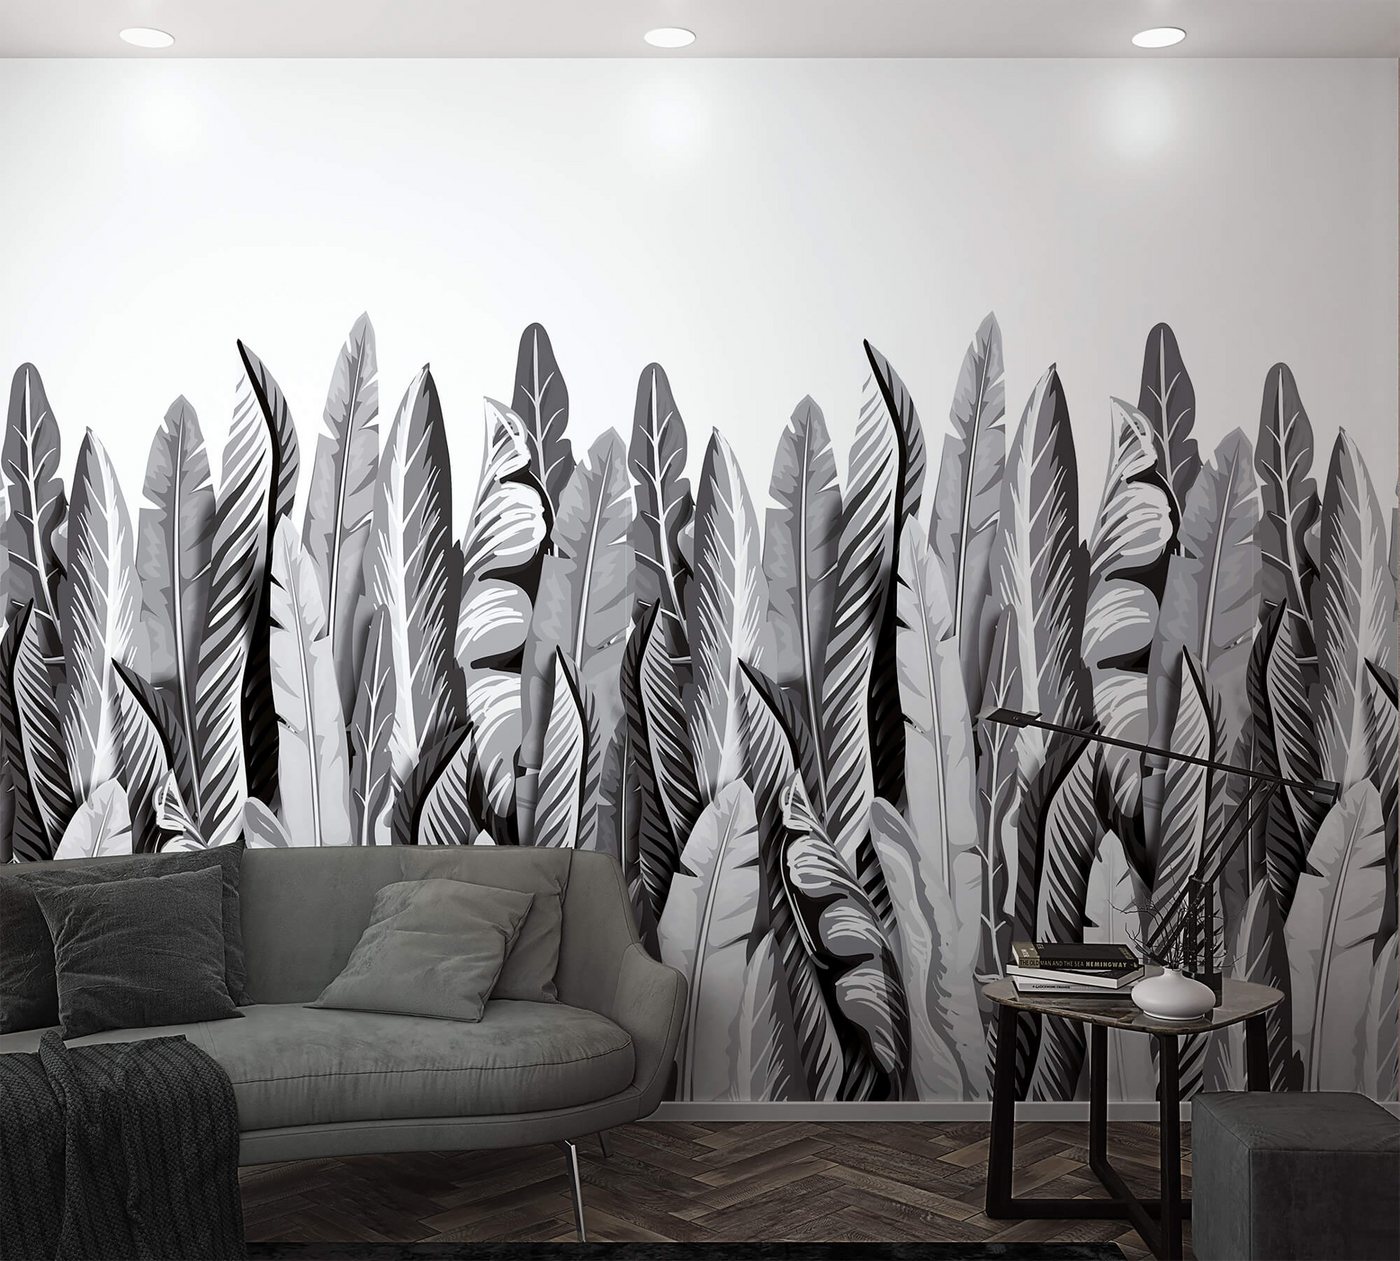 Newroom Vliestapete, [ 2,7 x 1,59m ] großzügiges Motiv - kein wiederkehrendes Muster - nahtlos große Flächen möglich - Fototapete Wandbild Dschungel Blätter Urwald Made in Germany von Newroom